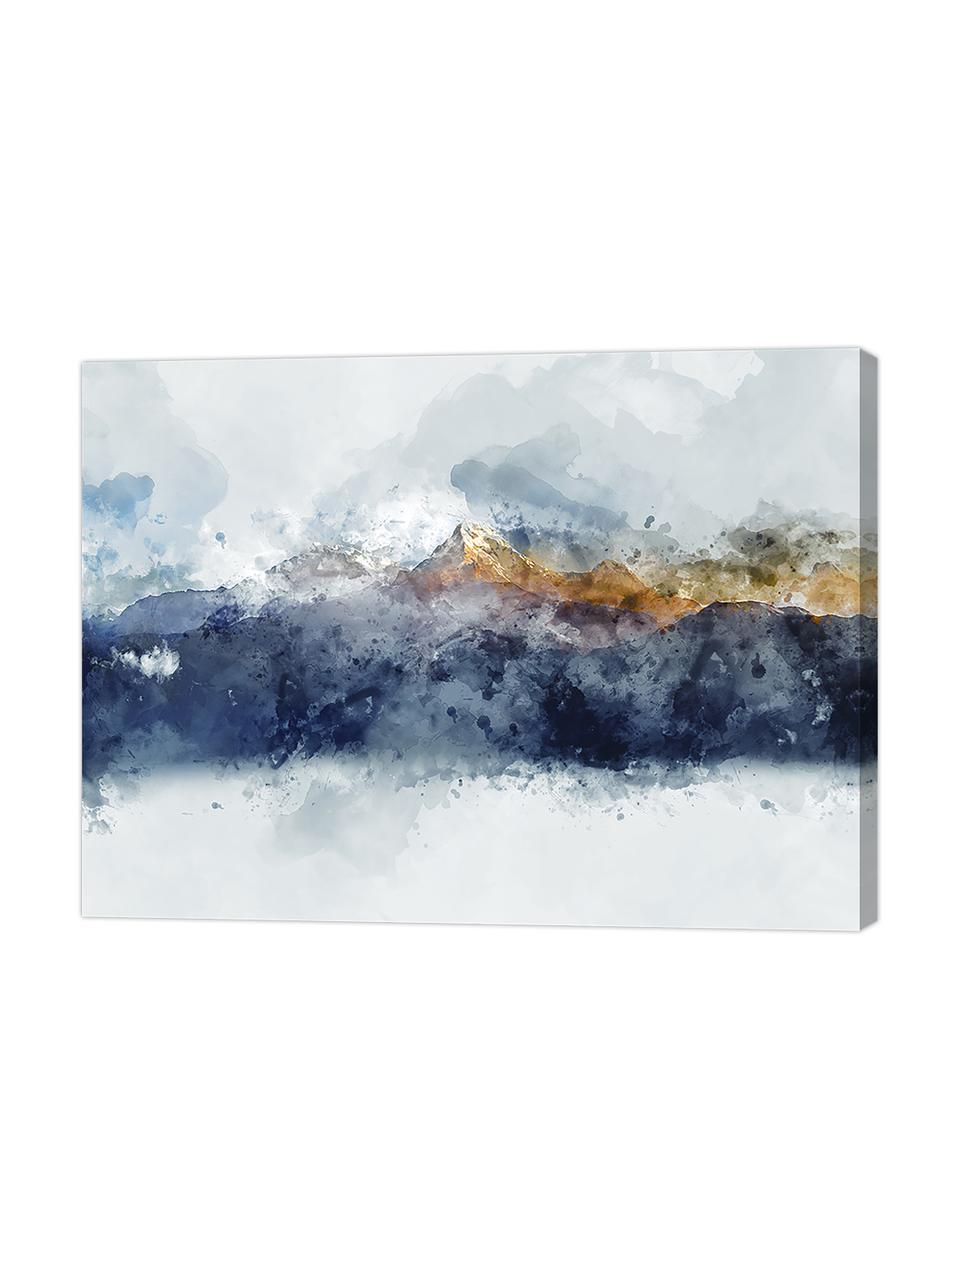 Leinwanddruck Abstract Mountain, Bild: Digitaldruck auf Leinen, Mehrfarbig, 80 x 60 cm